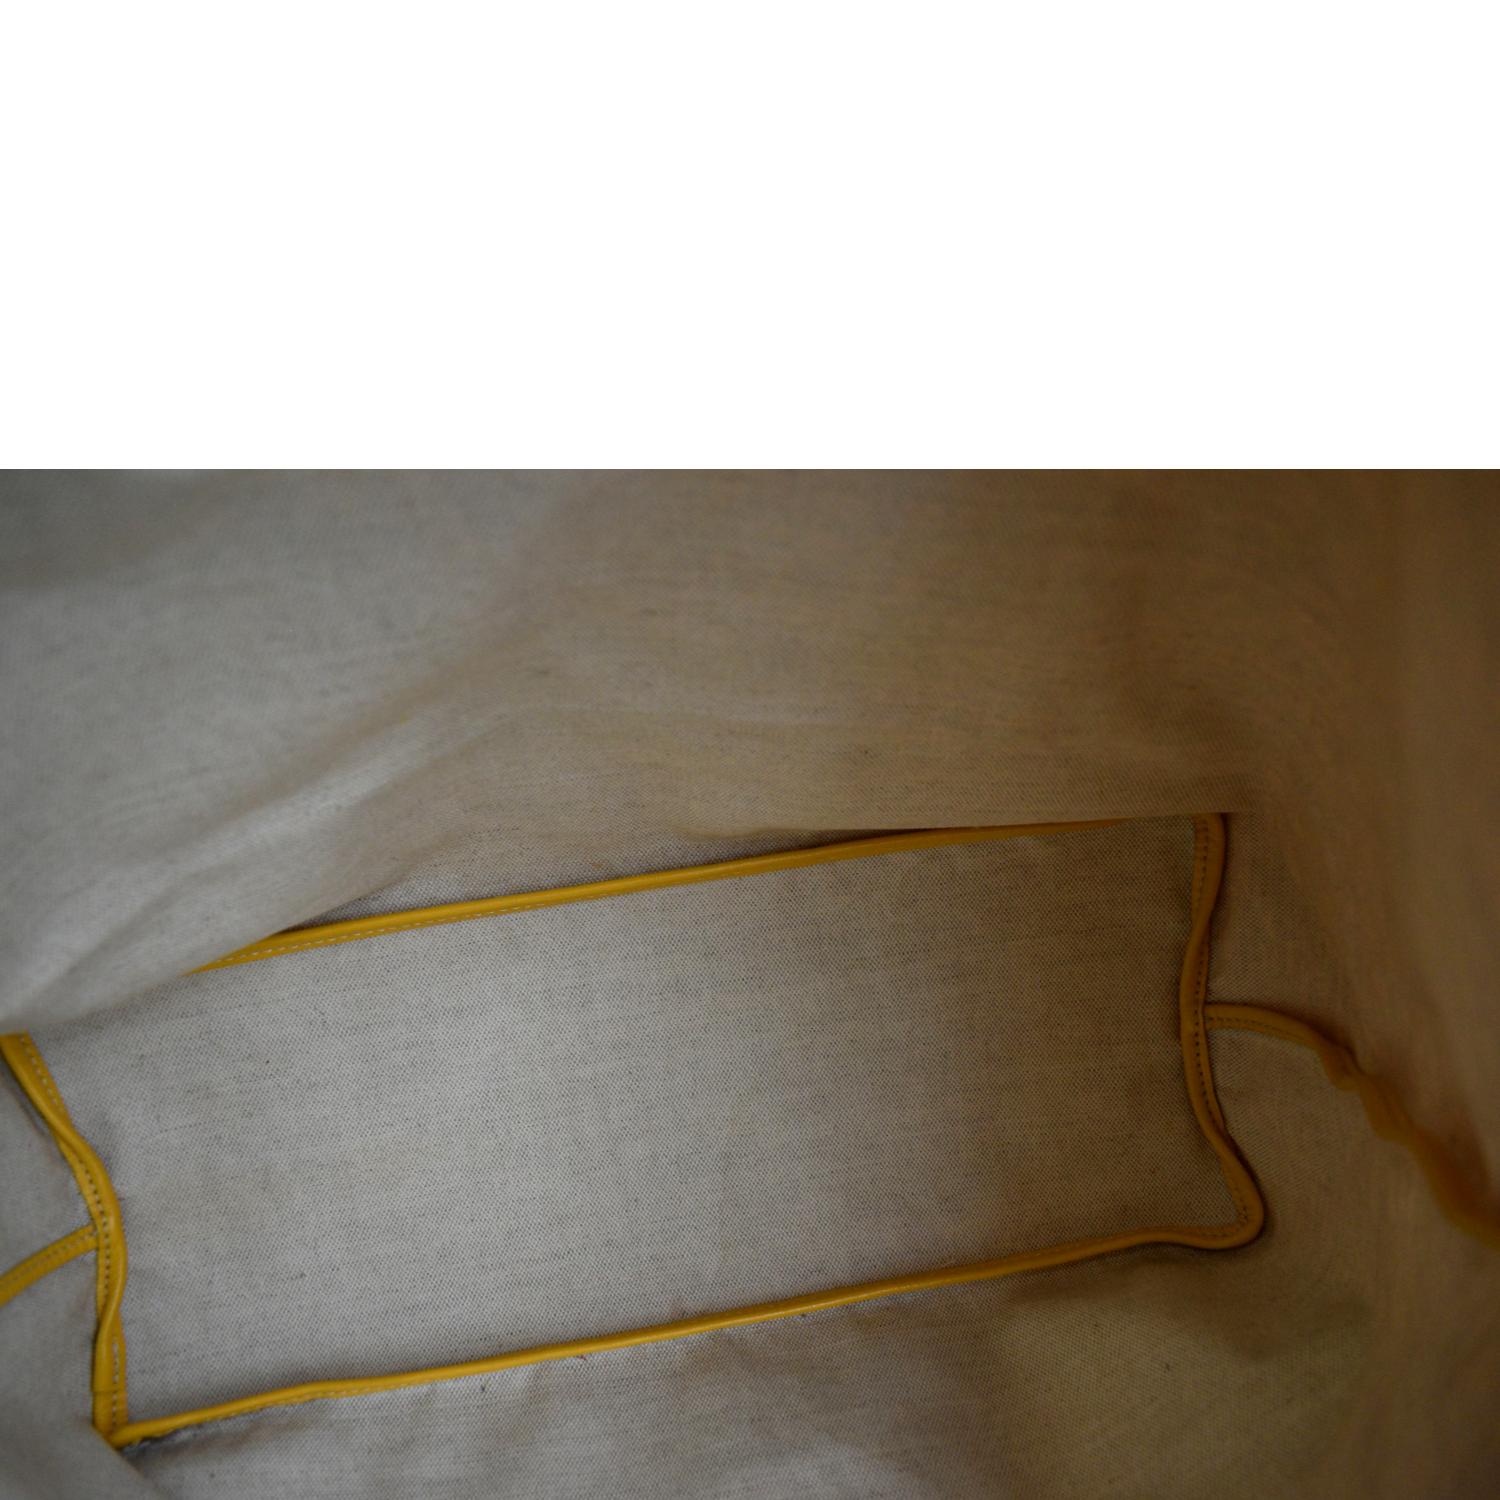 Goyard Yellow Chevron St Louis PM Tote Bag with Pouch 229gy55